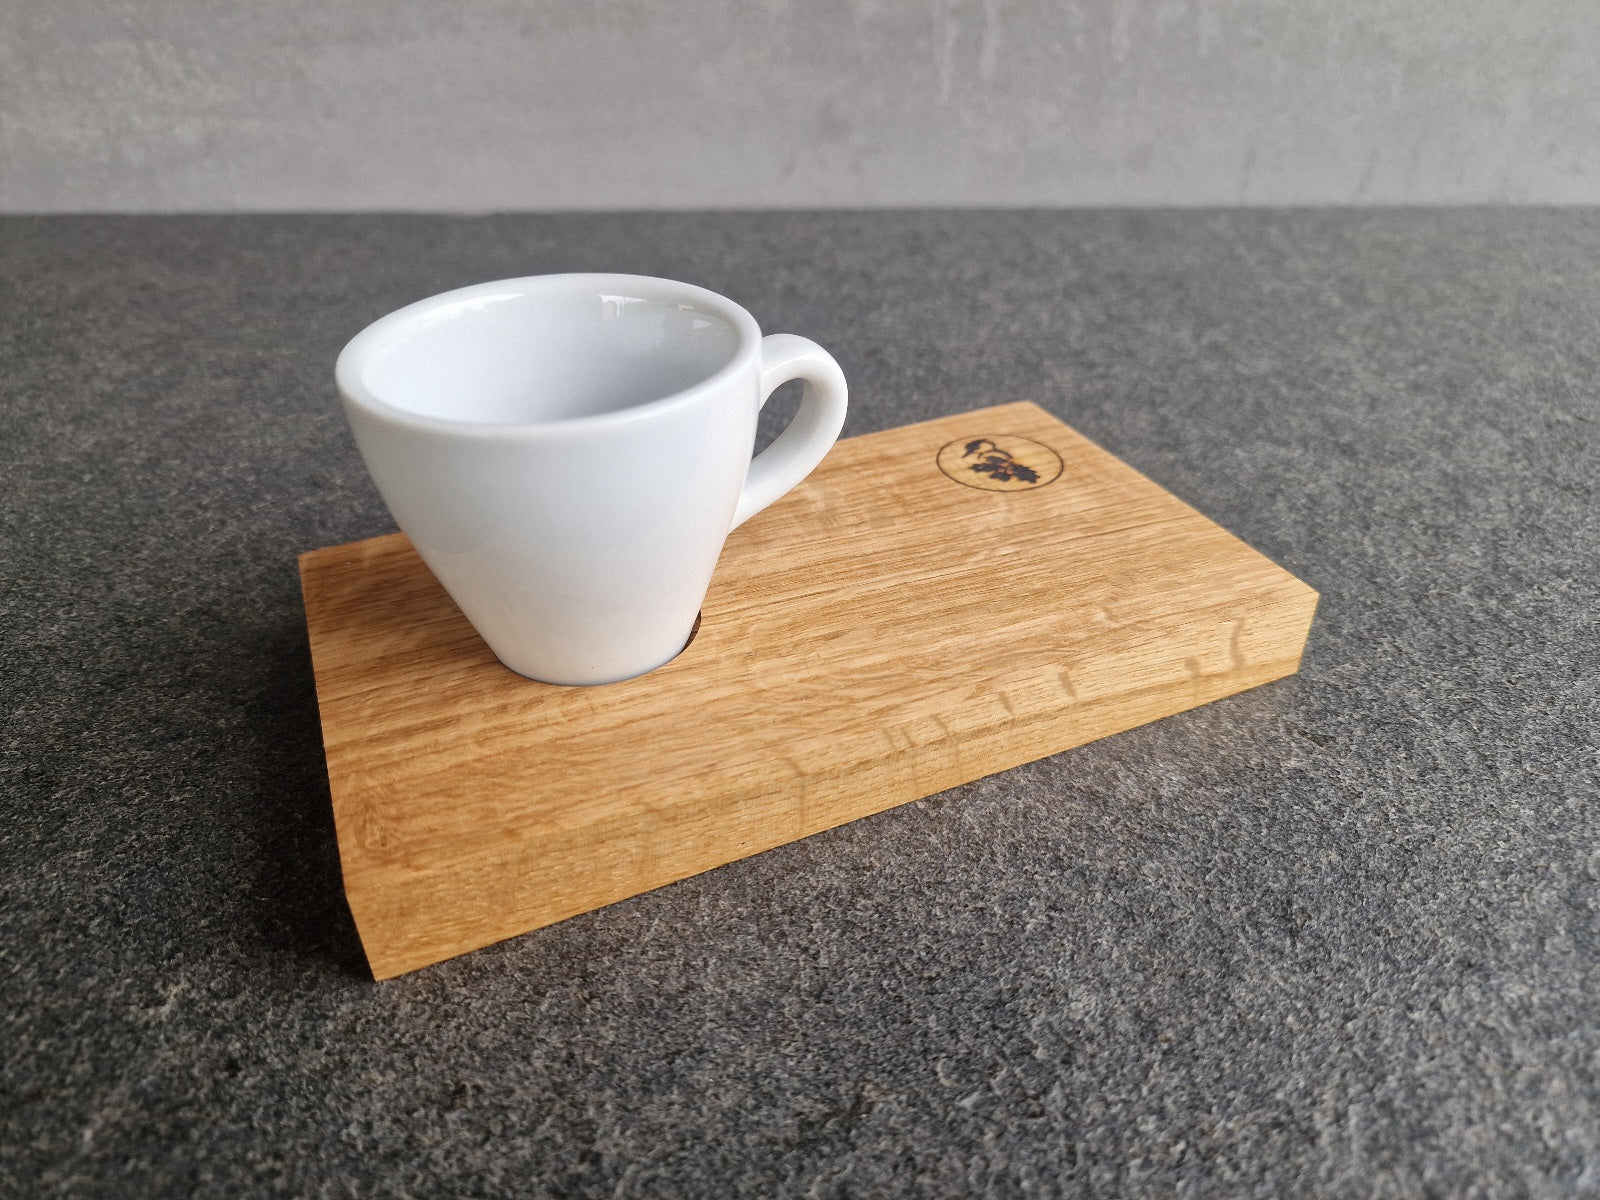 Holz Espressotablett aus Eiche mit einer Mulde mit einer weißen Espressotasse.